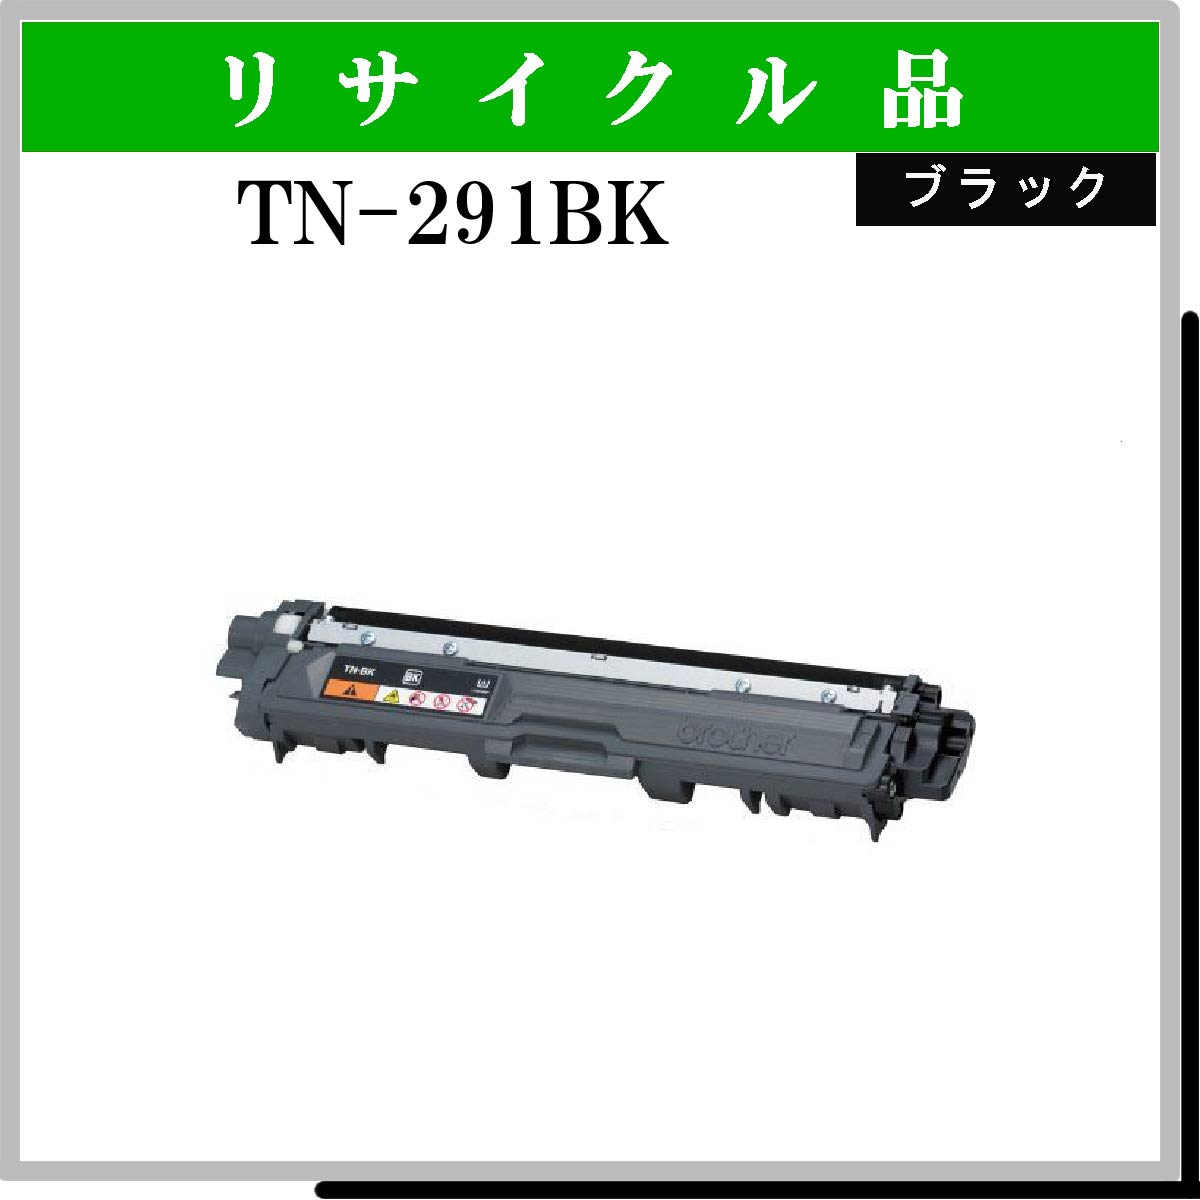 TN-291BK